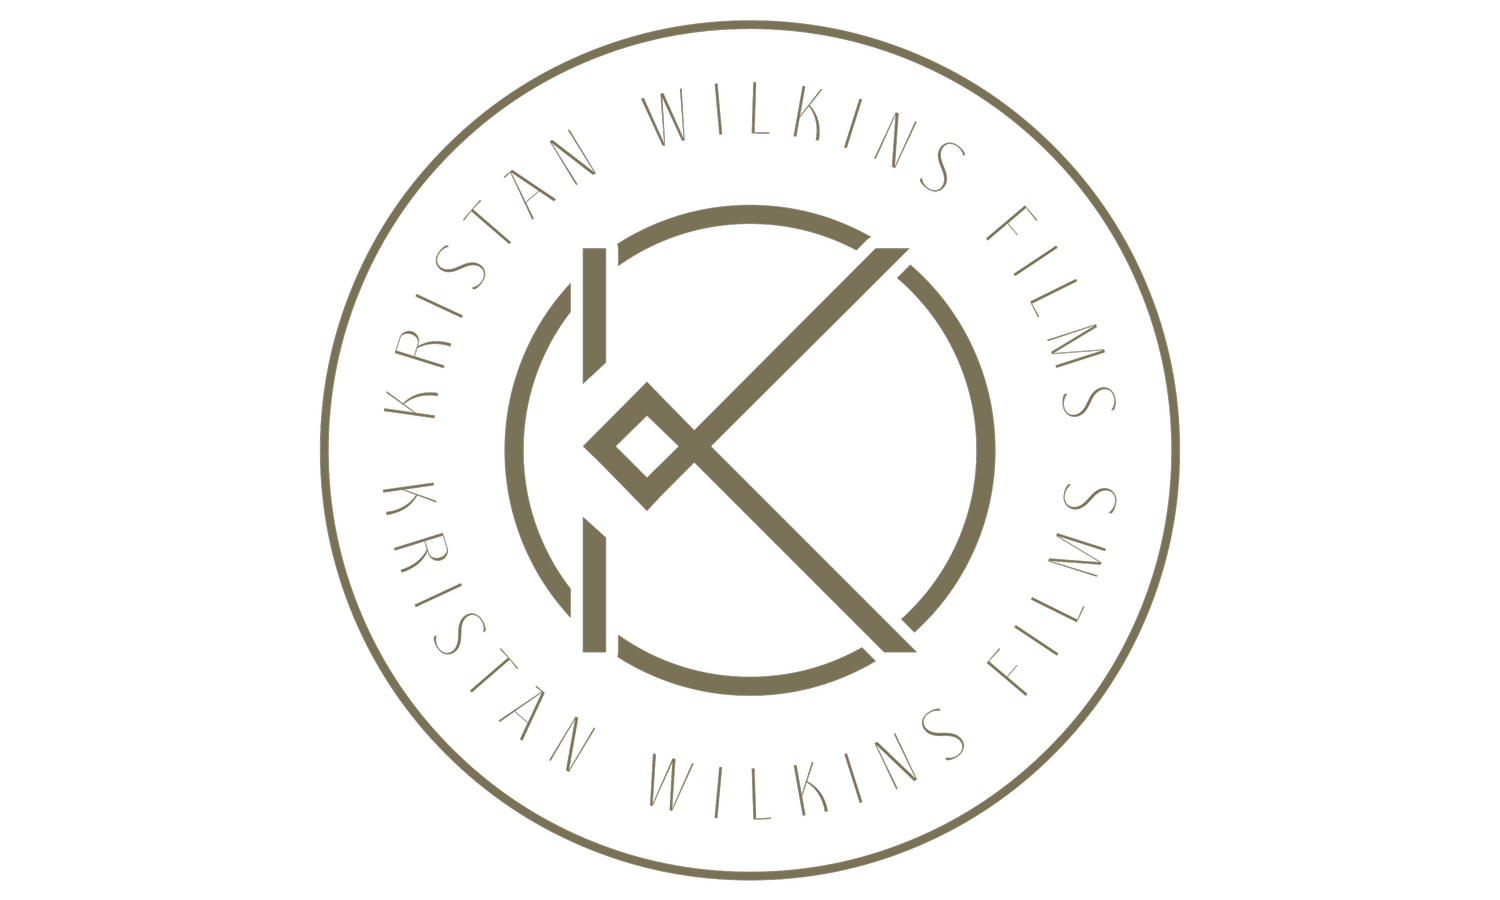 Kristan Wilkins Films